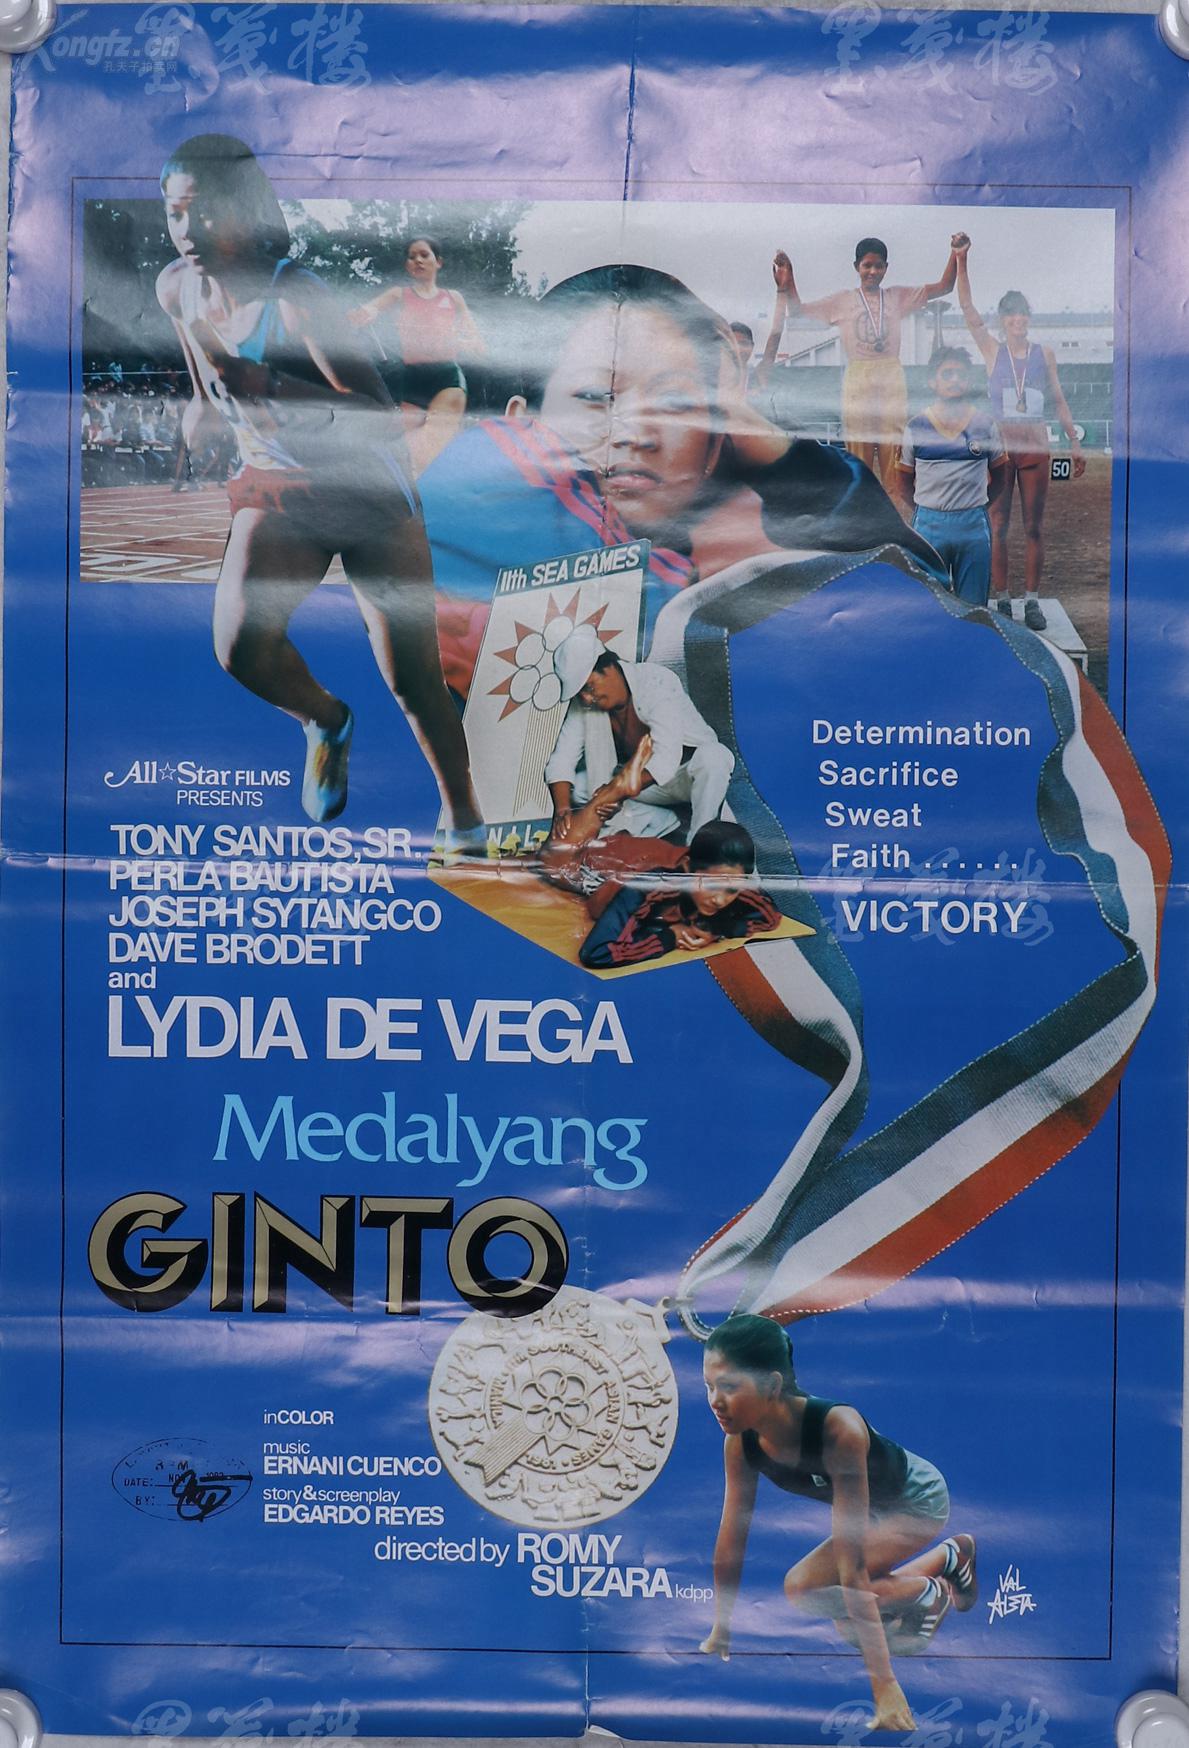 赵 庆 伟收藏 八十年代奥运宣传海报一张 尺寸 73 51 5cm Hxtx1060 孔夫子旧书网